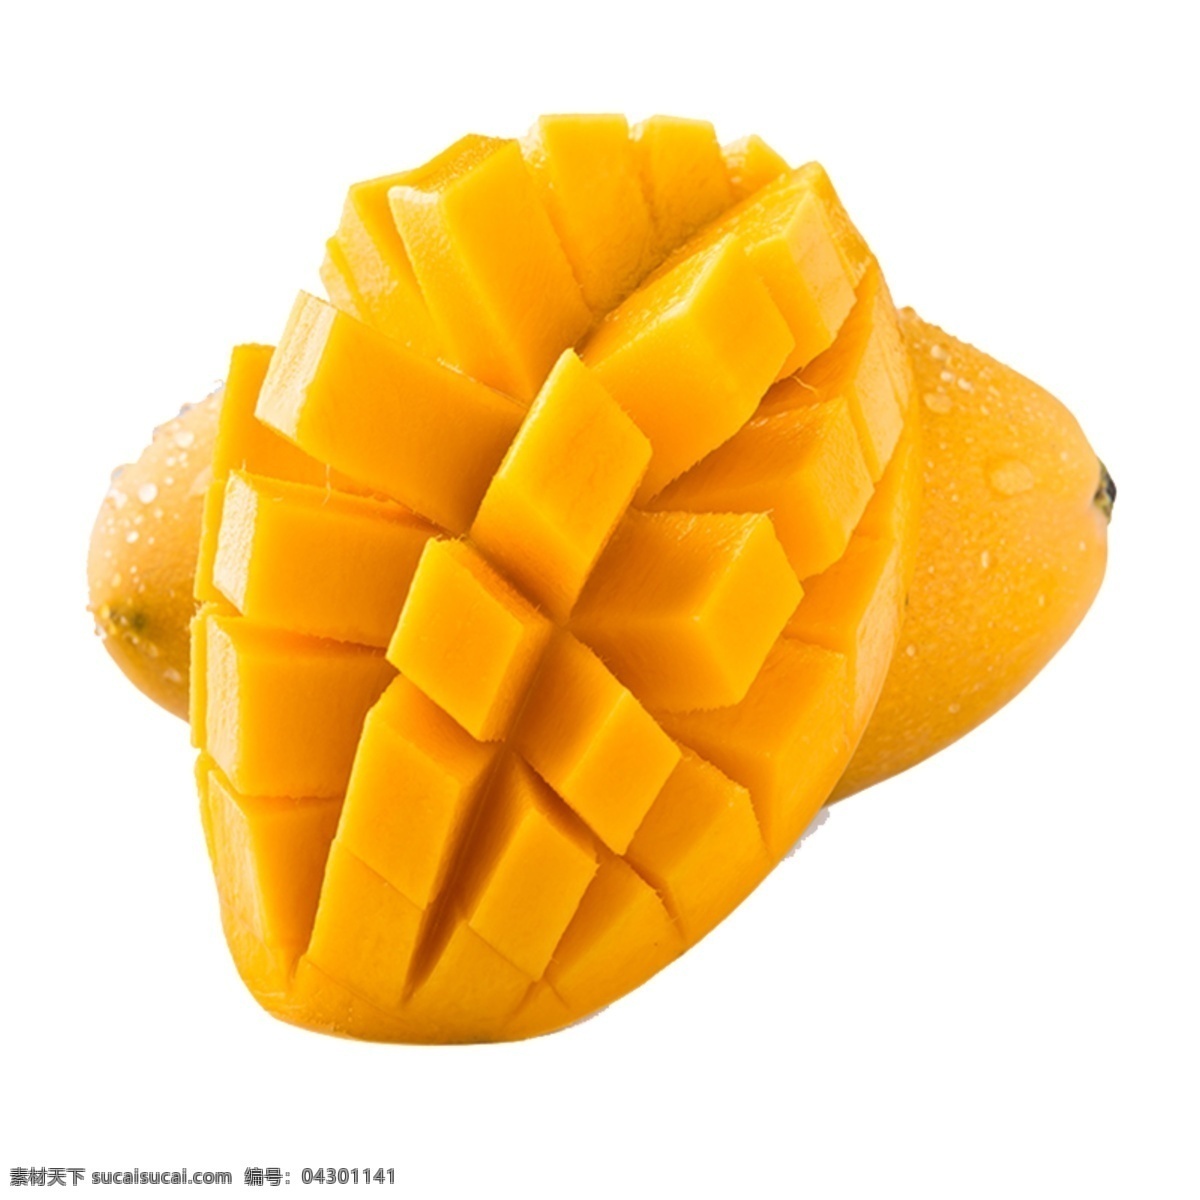 芒果图片 芒果 水果 绿芒果 黄芒果 成熟水果 成熟芒果 素材图